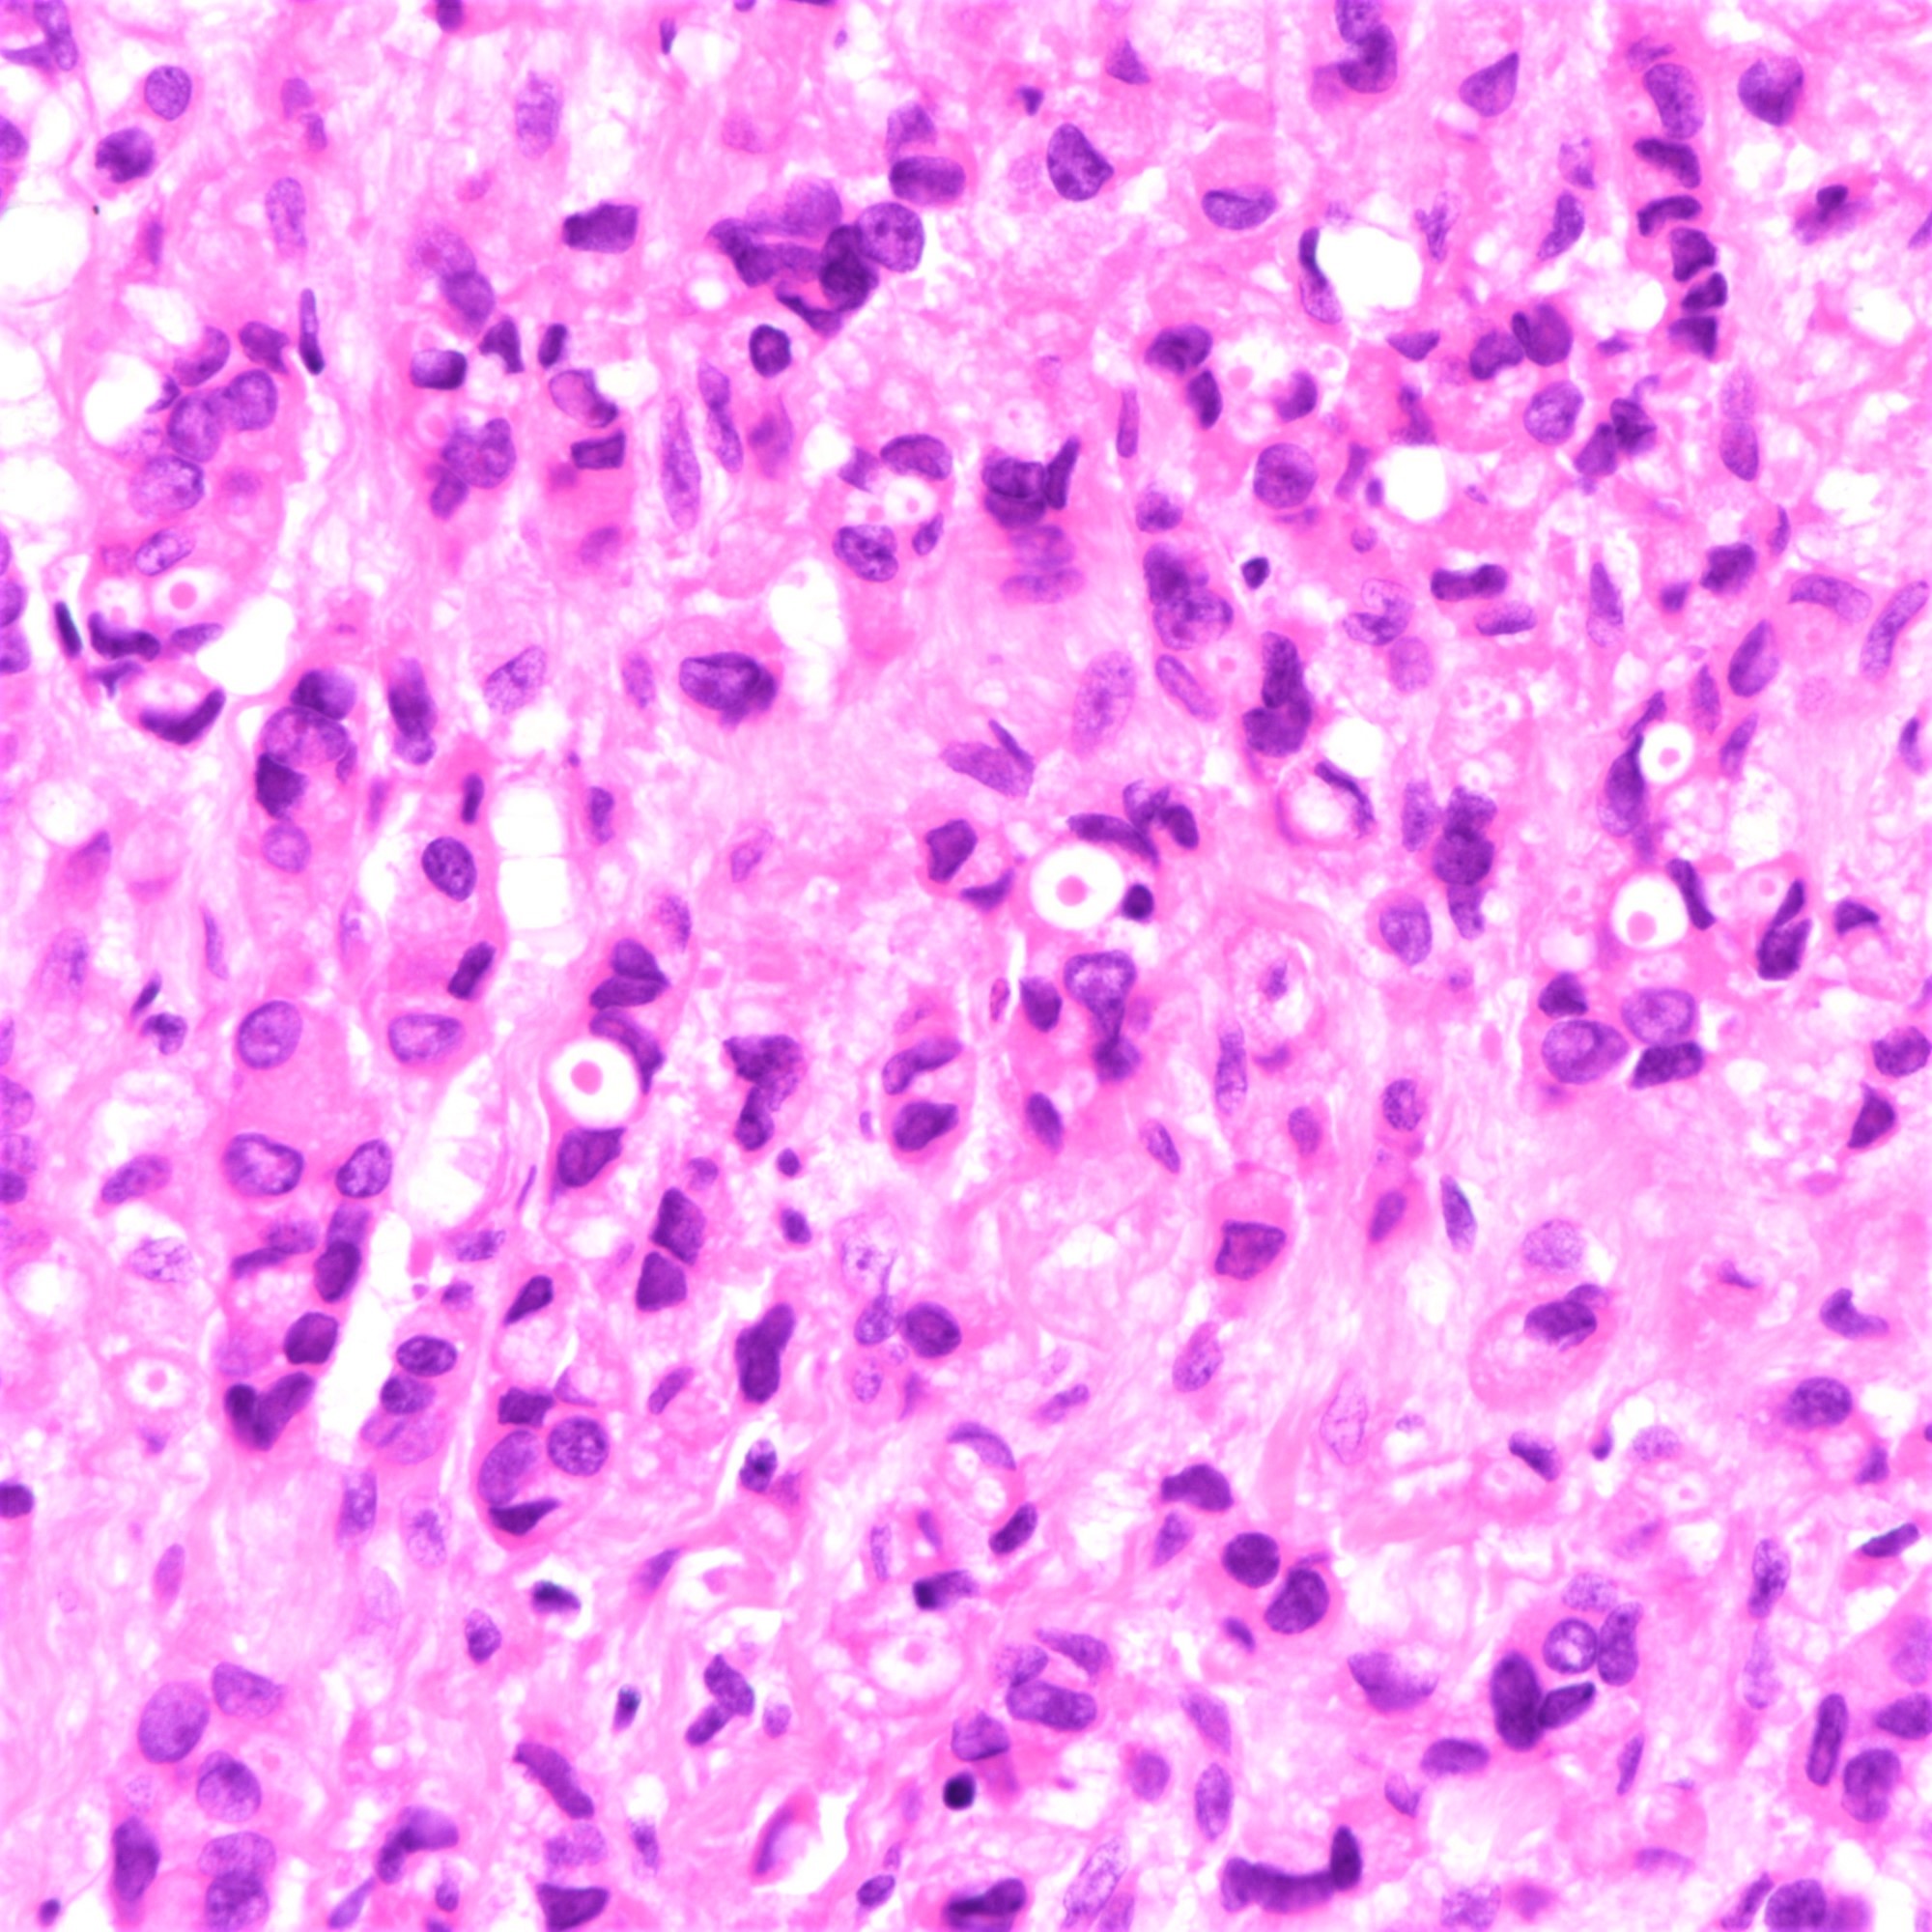 Intracytoplasmic vacuoles